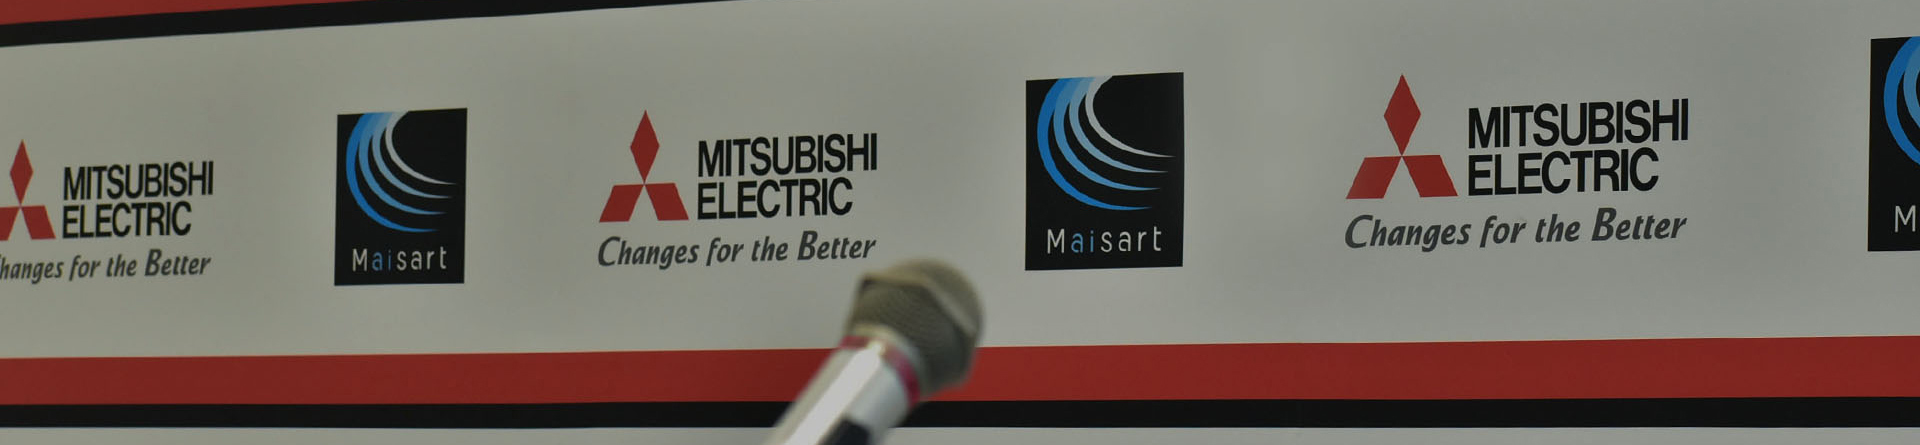  Mitsubishi Electric: Robot và trí thông minh nhân tạo kết hợp hài hòa với con người để tạo nên một nhà máy thông minh bền vững